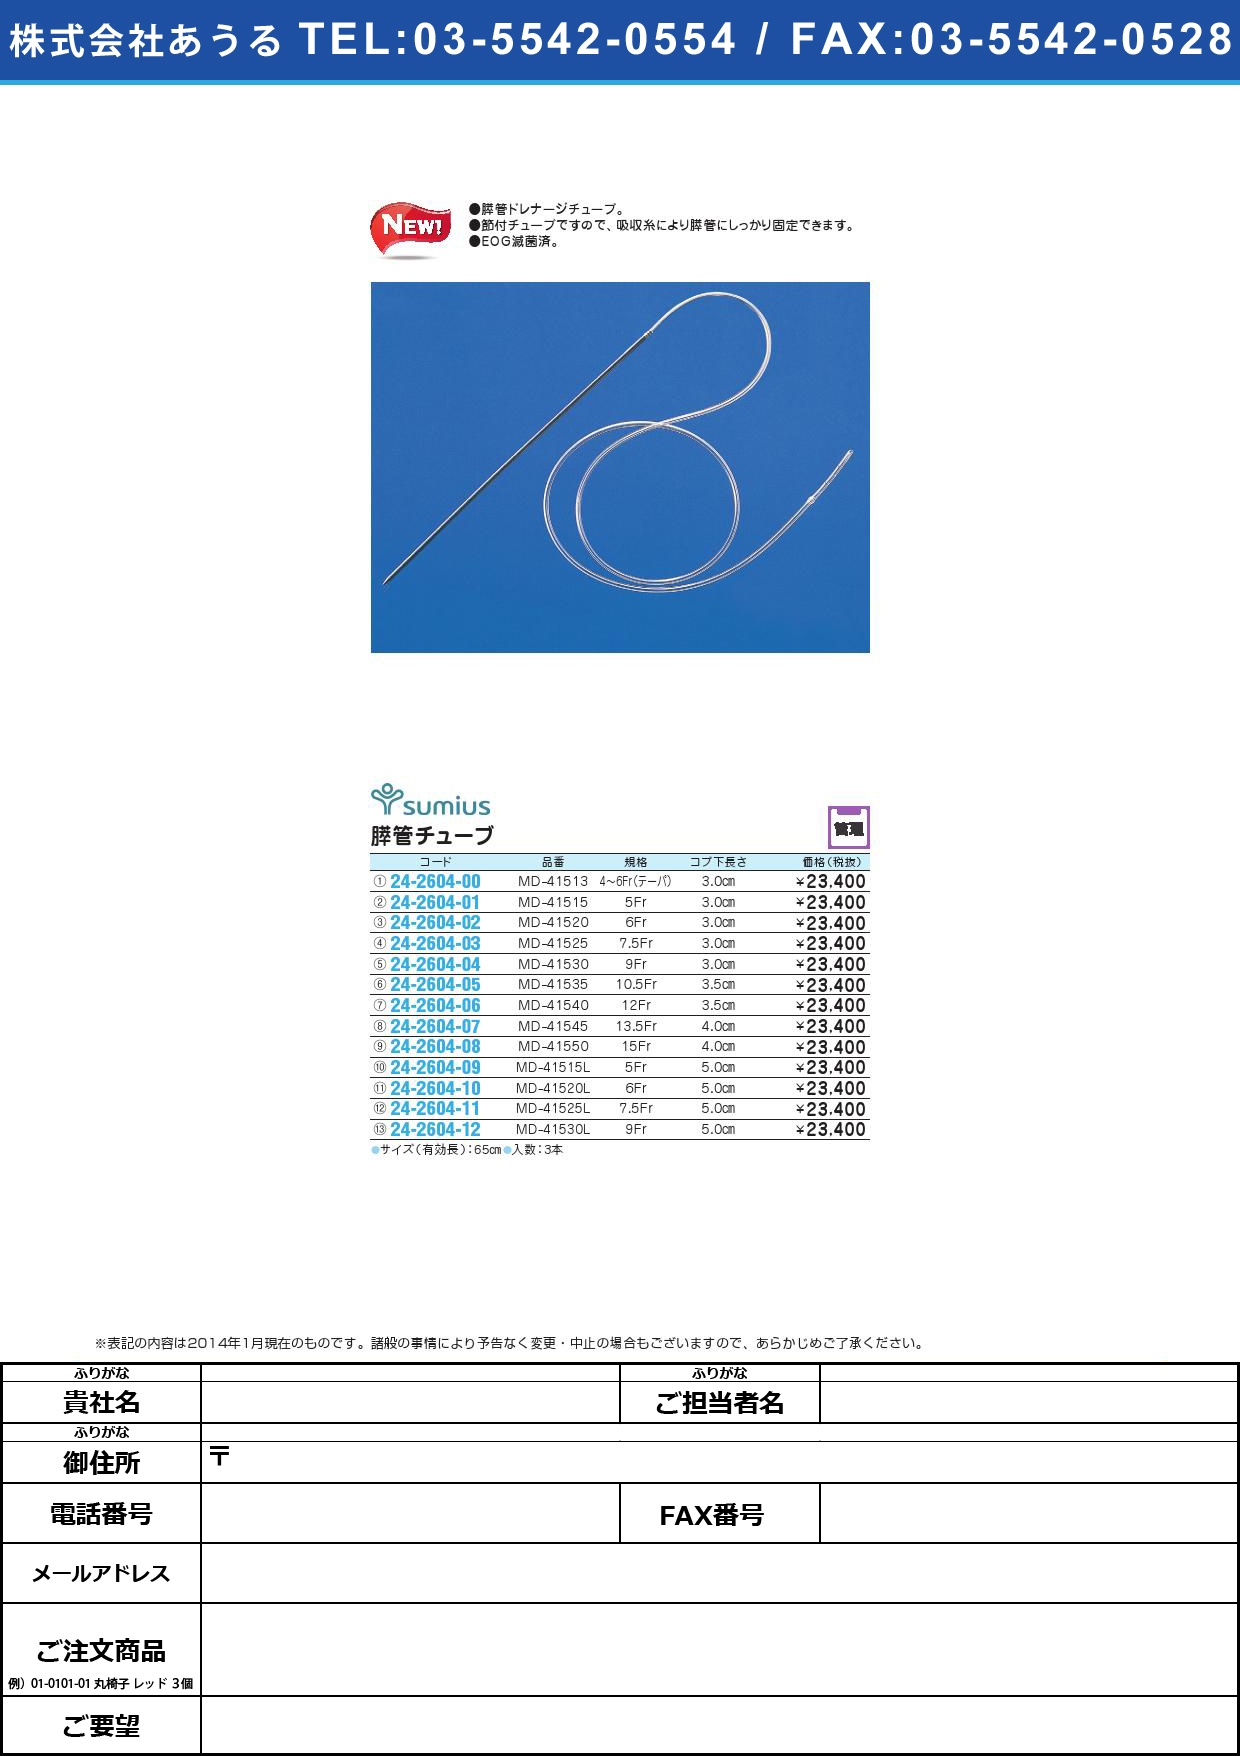 膵管チューブ ｽｲｶﾝﾁｭｰﾌﾞ(24-2604-07)MD-41545(13.5FR)3ﾎﾝ【1箱単位】